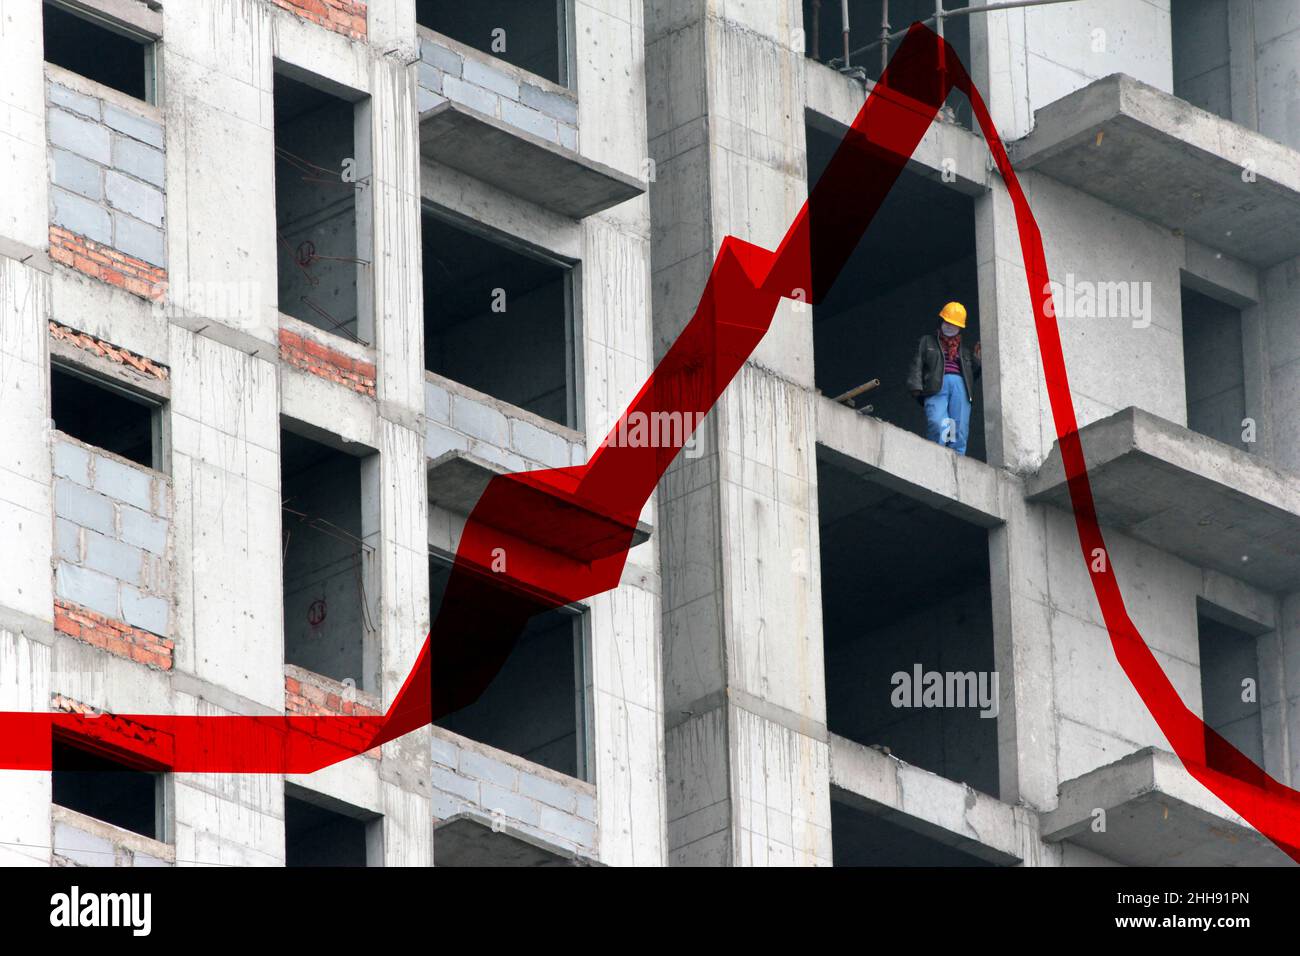 Un ouvrier de la construction dans un immeuble d'appartements, Chine.La tendance rouge reflète l'augmentation des prix de l'immobilier. Banque D'Images